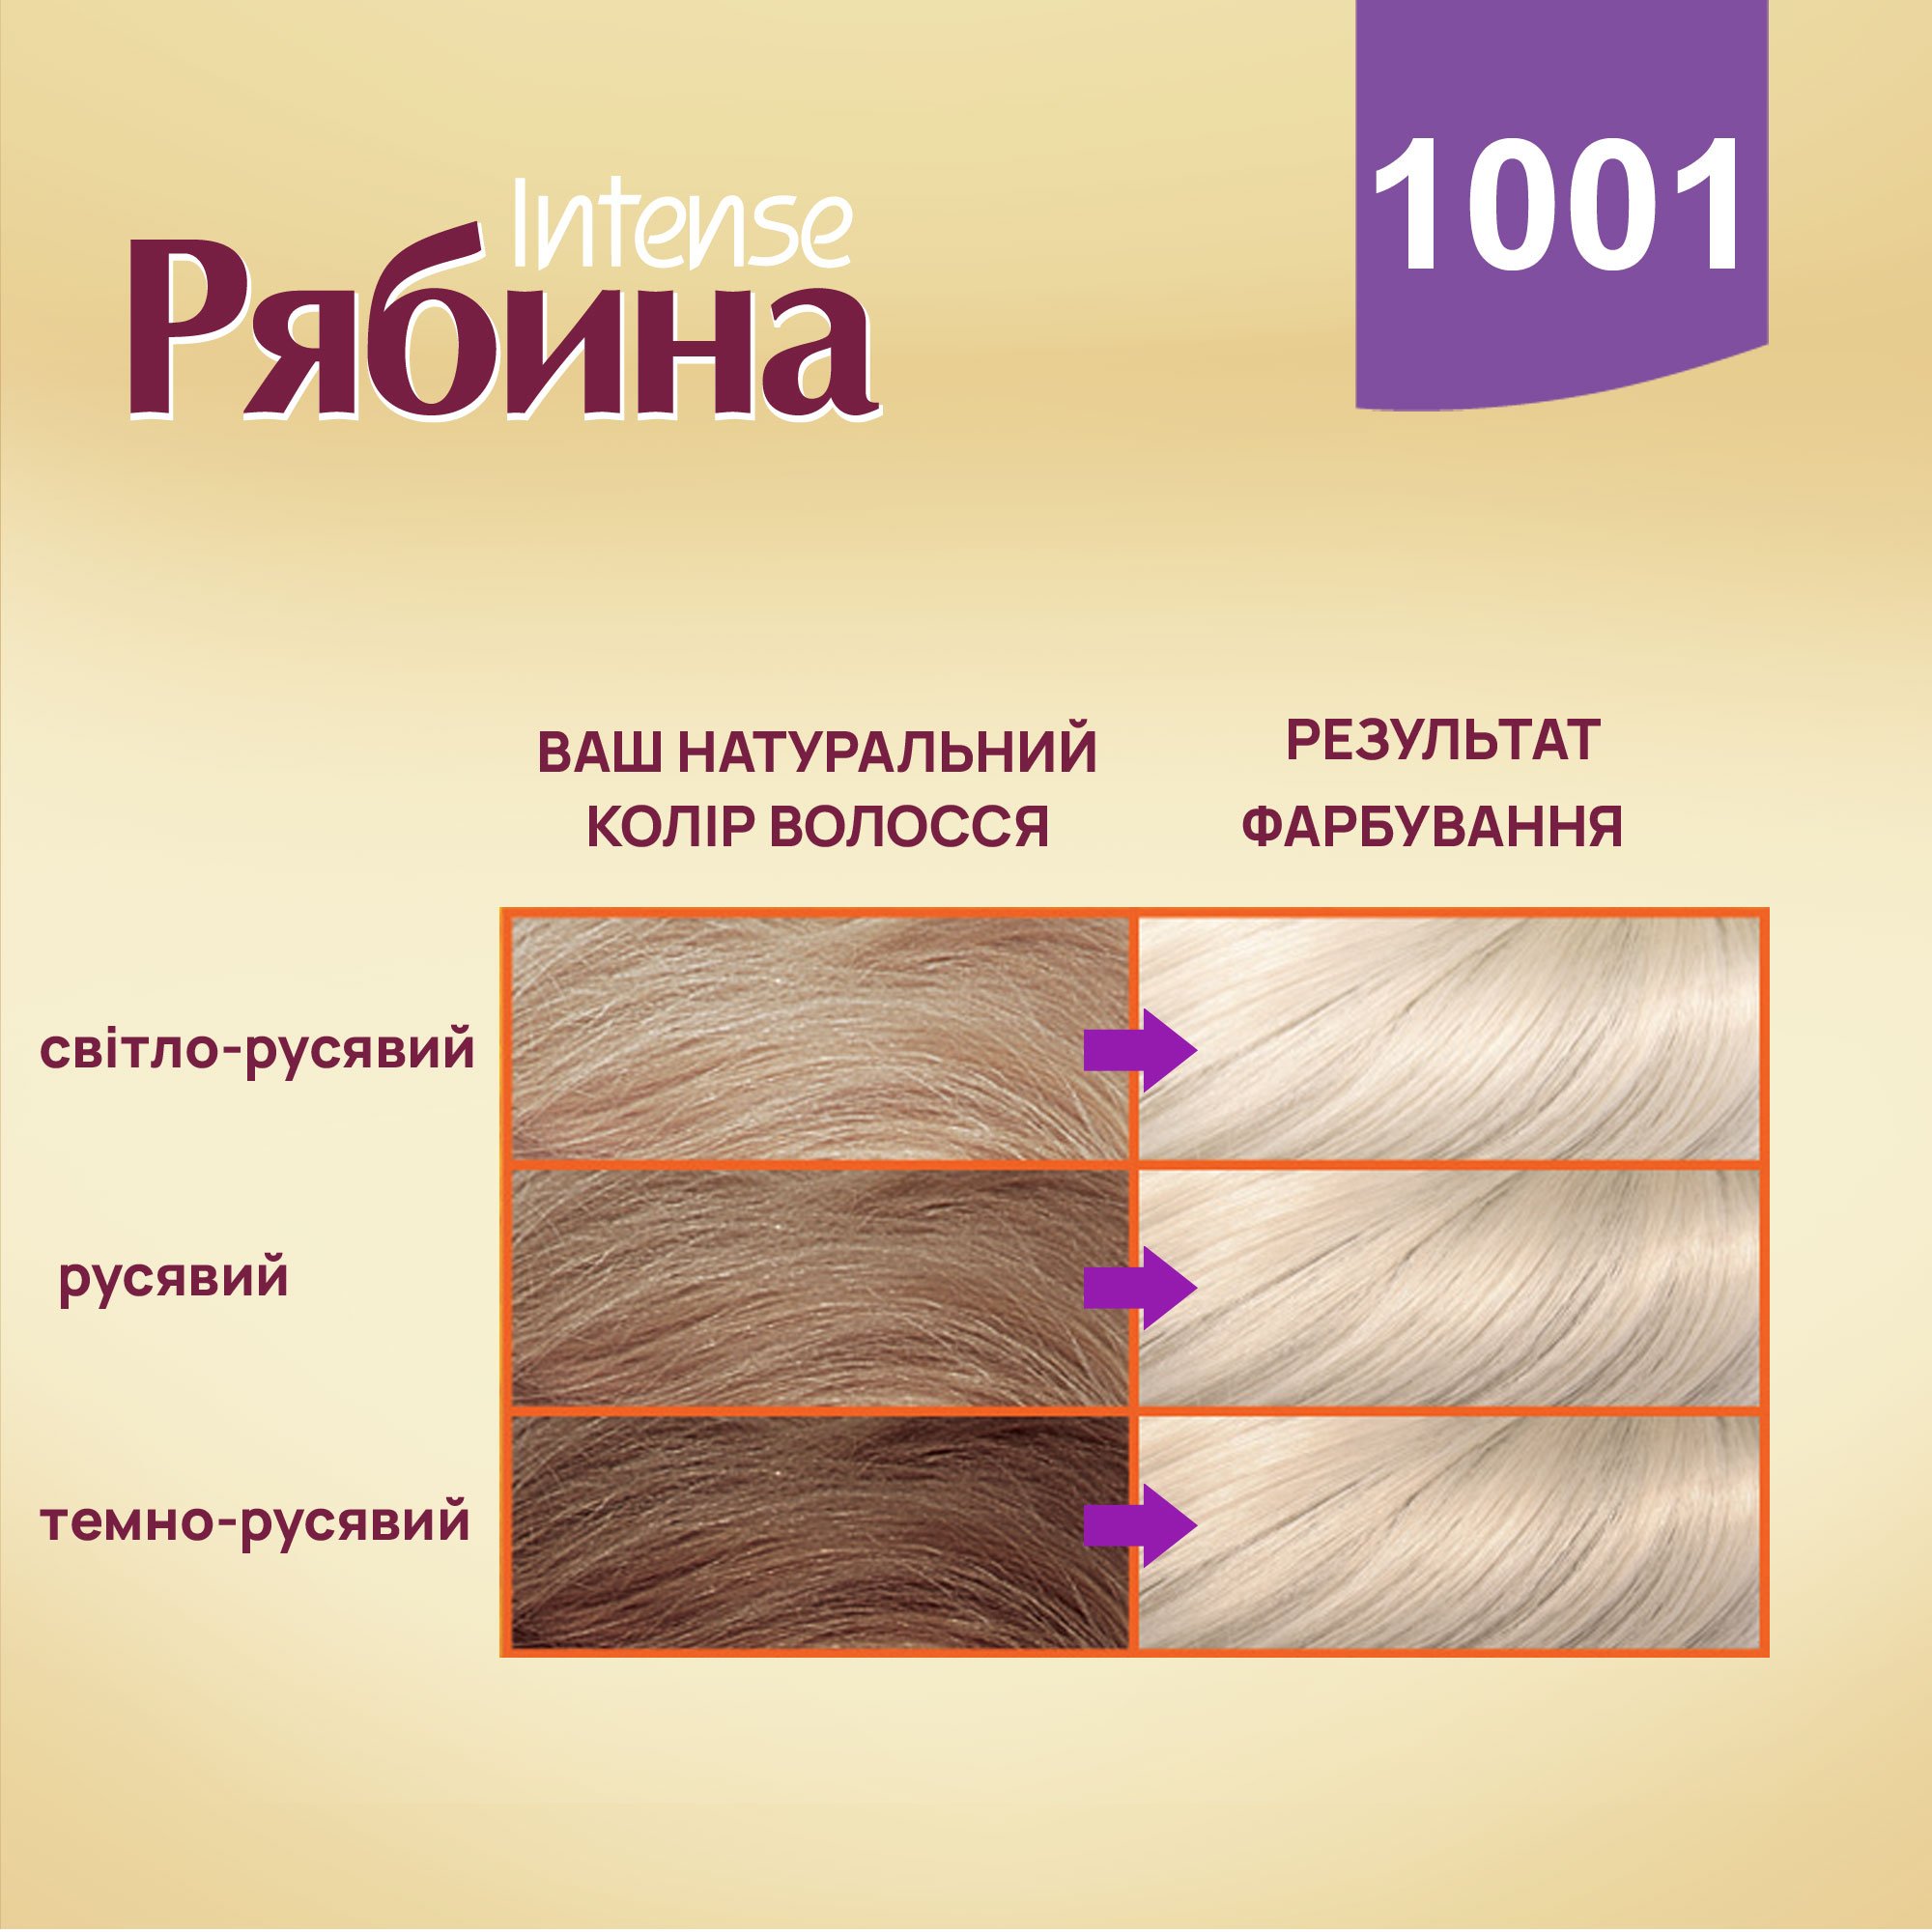 Крем-краска для волос Acme Color Intense Рябина, оттенок 1001 (Платиновый блонд), 138 мл - фото 3